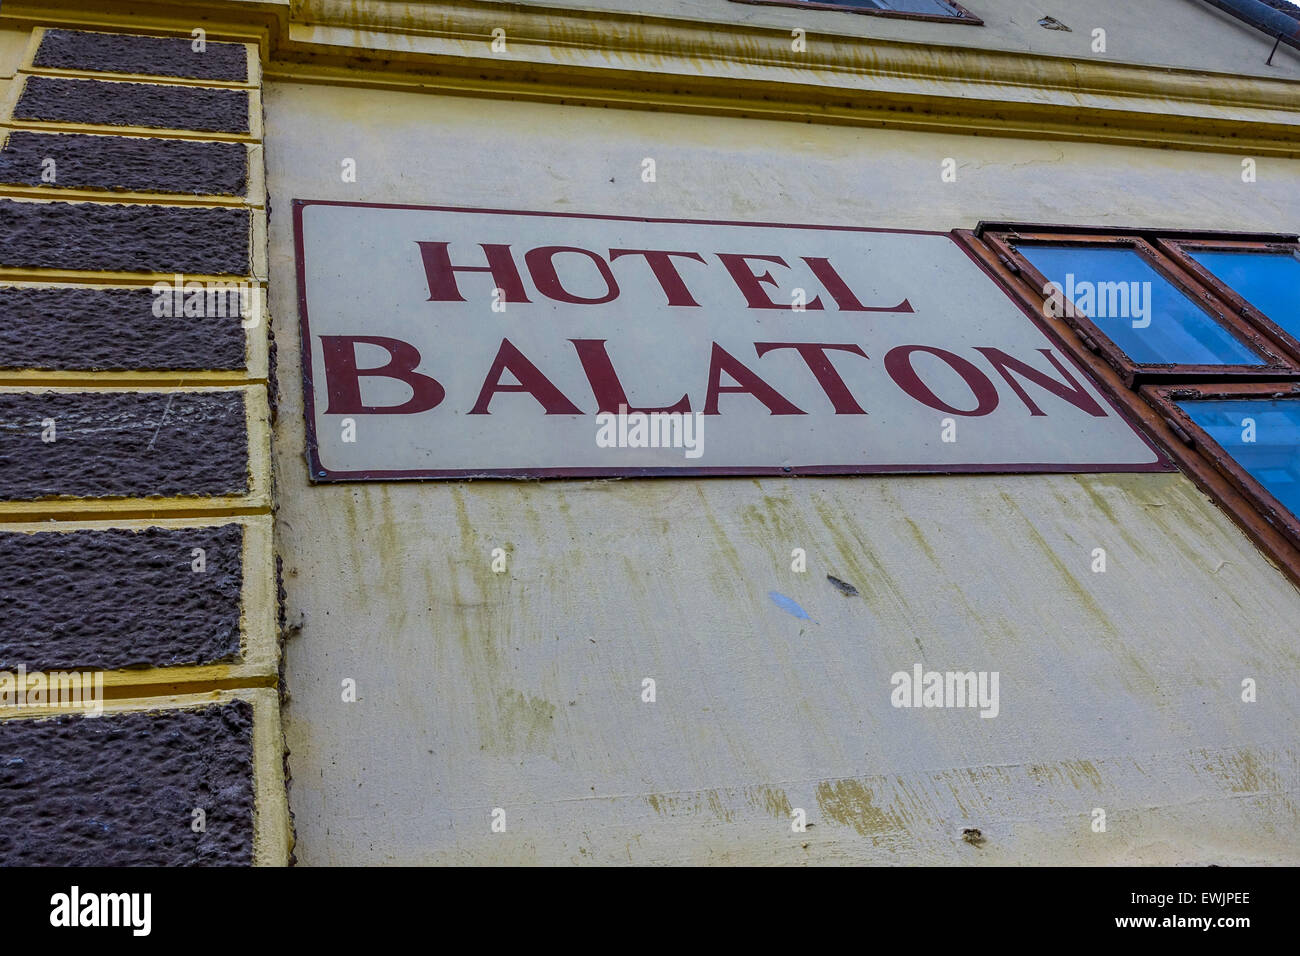 Hotel Balaton, Keszthely, Balaton, Hungary, Western Hungary, lake Balaton Stock Photo